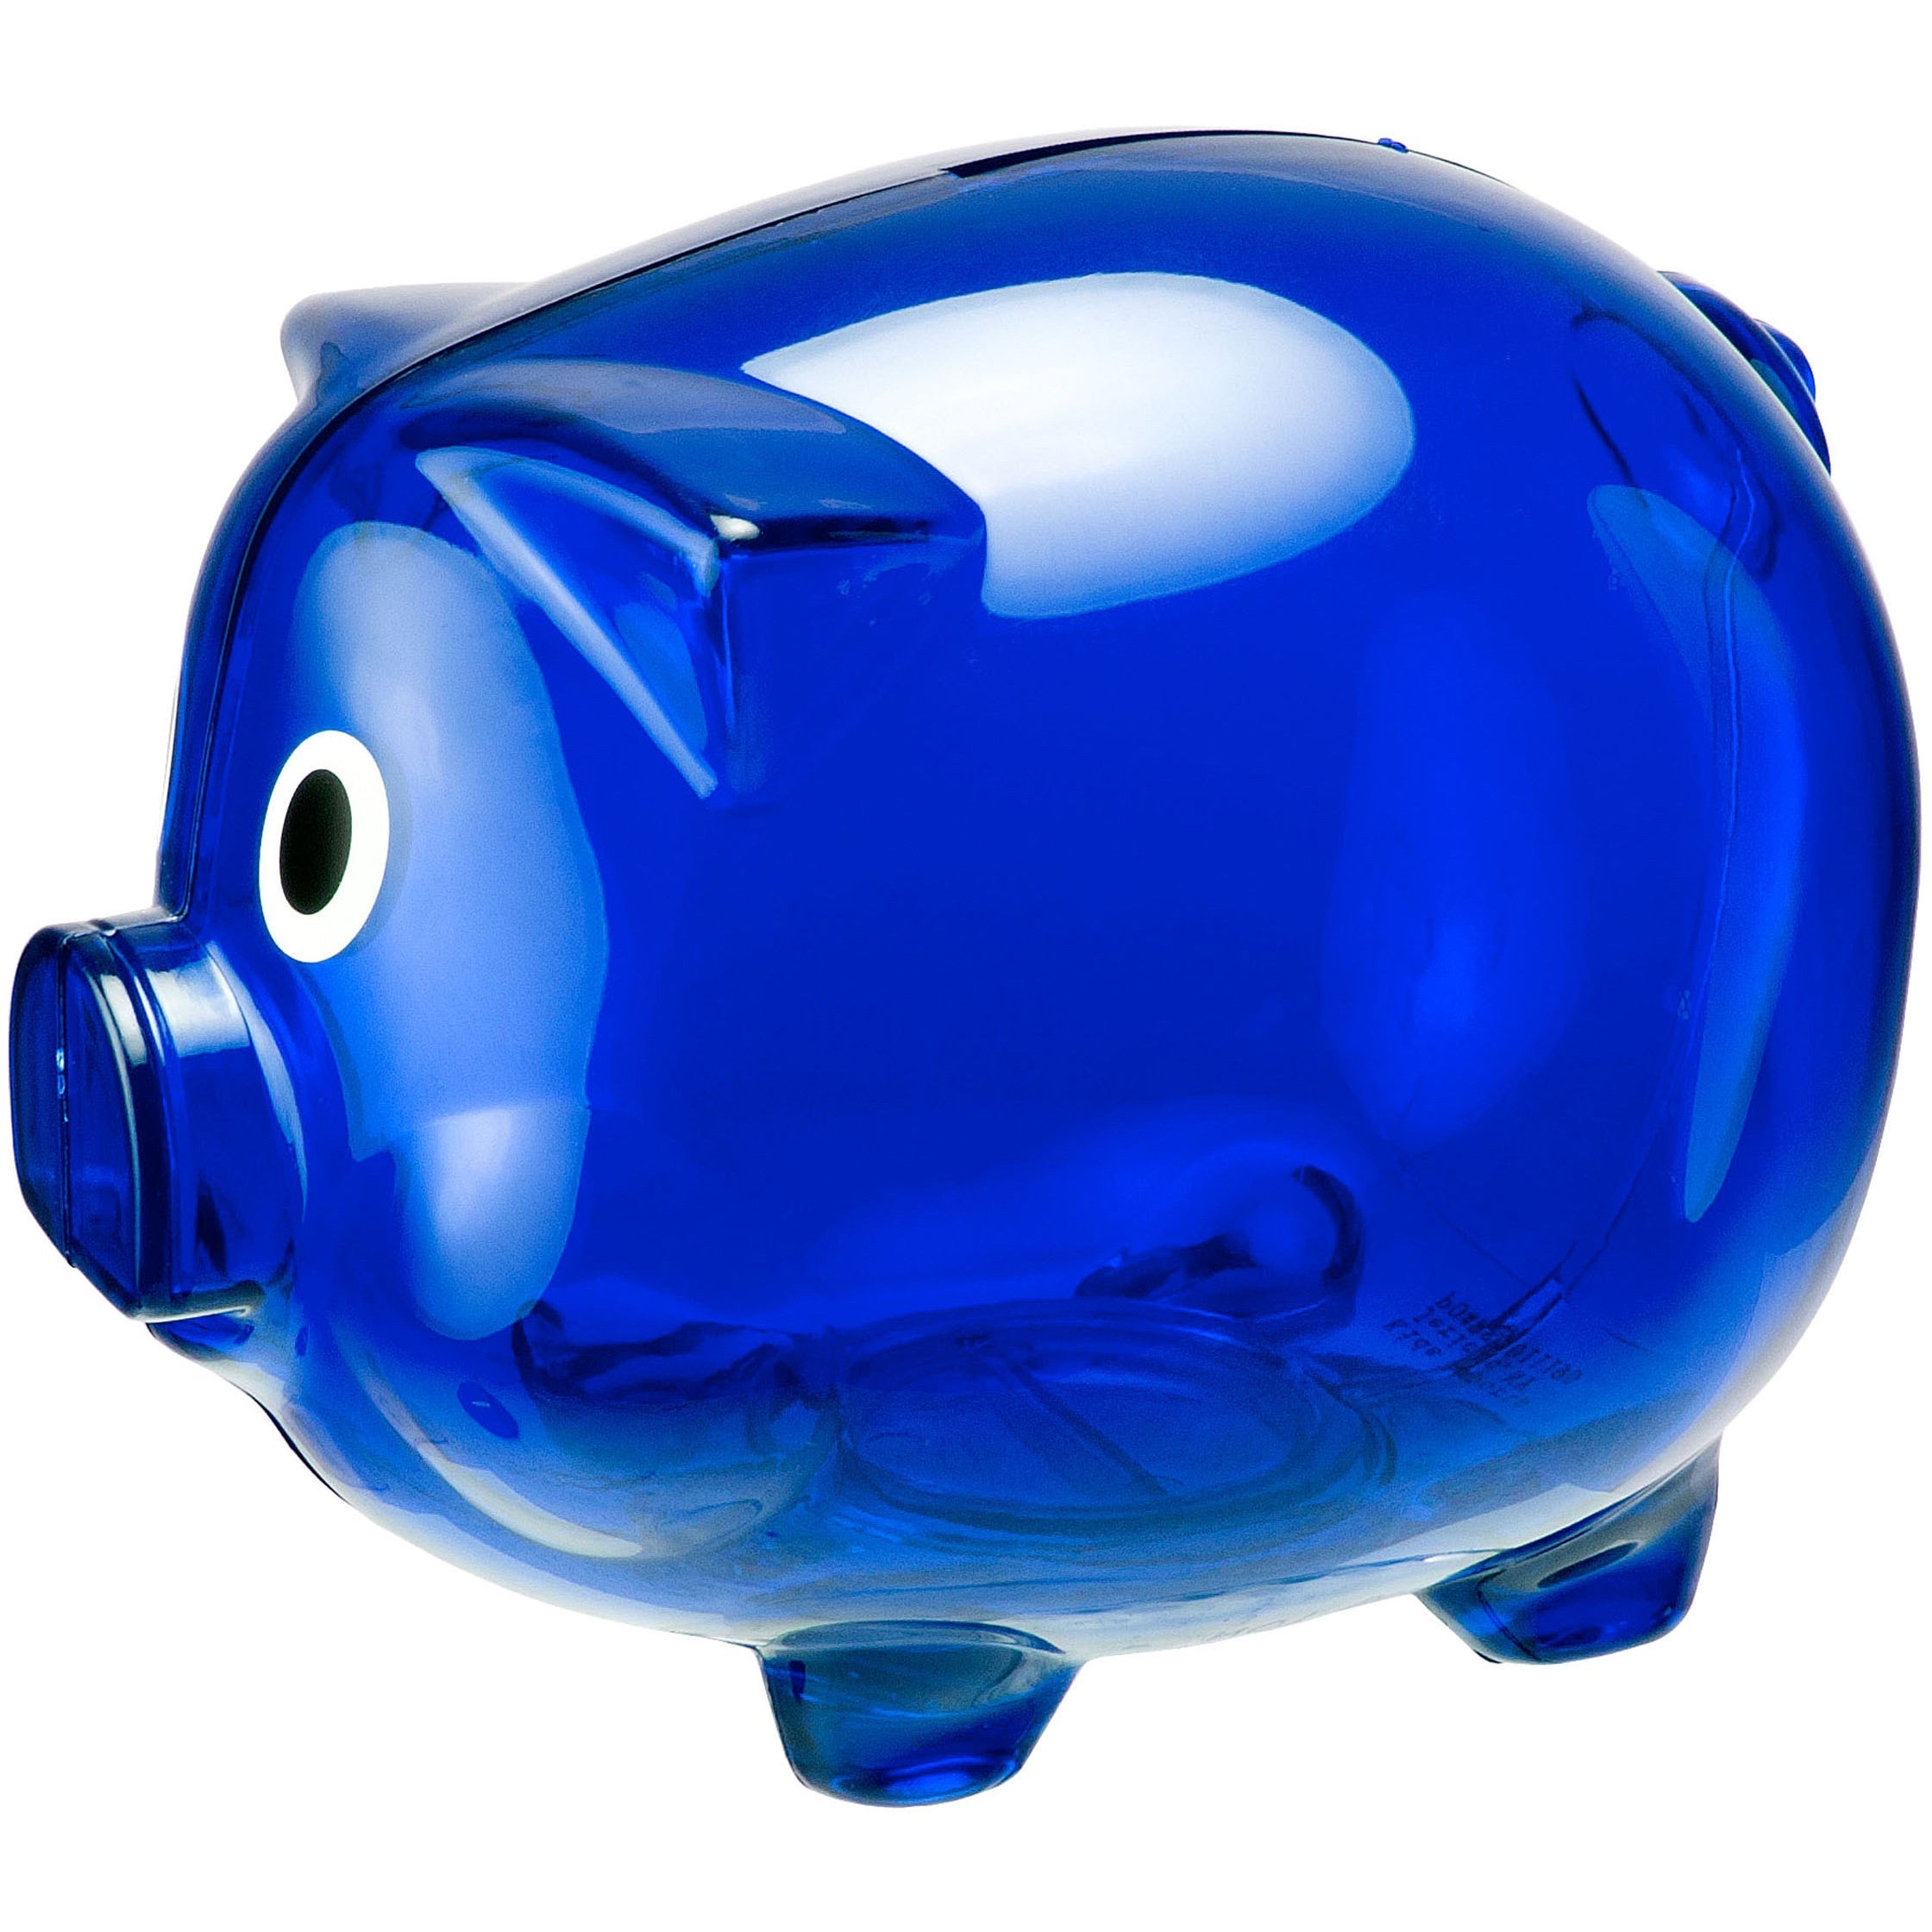 blue piggy bank